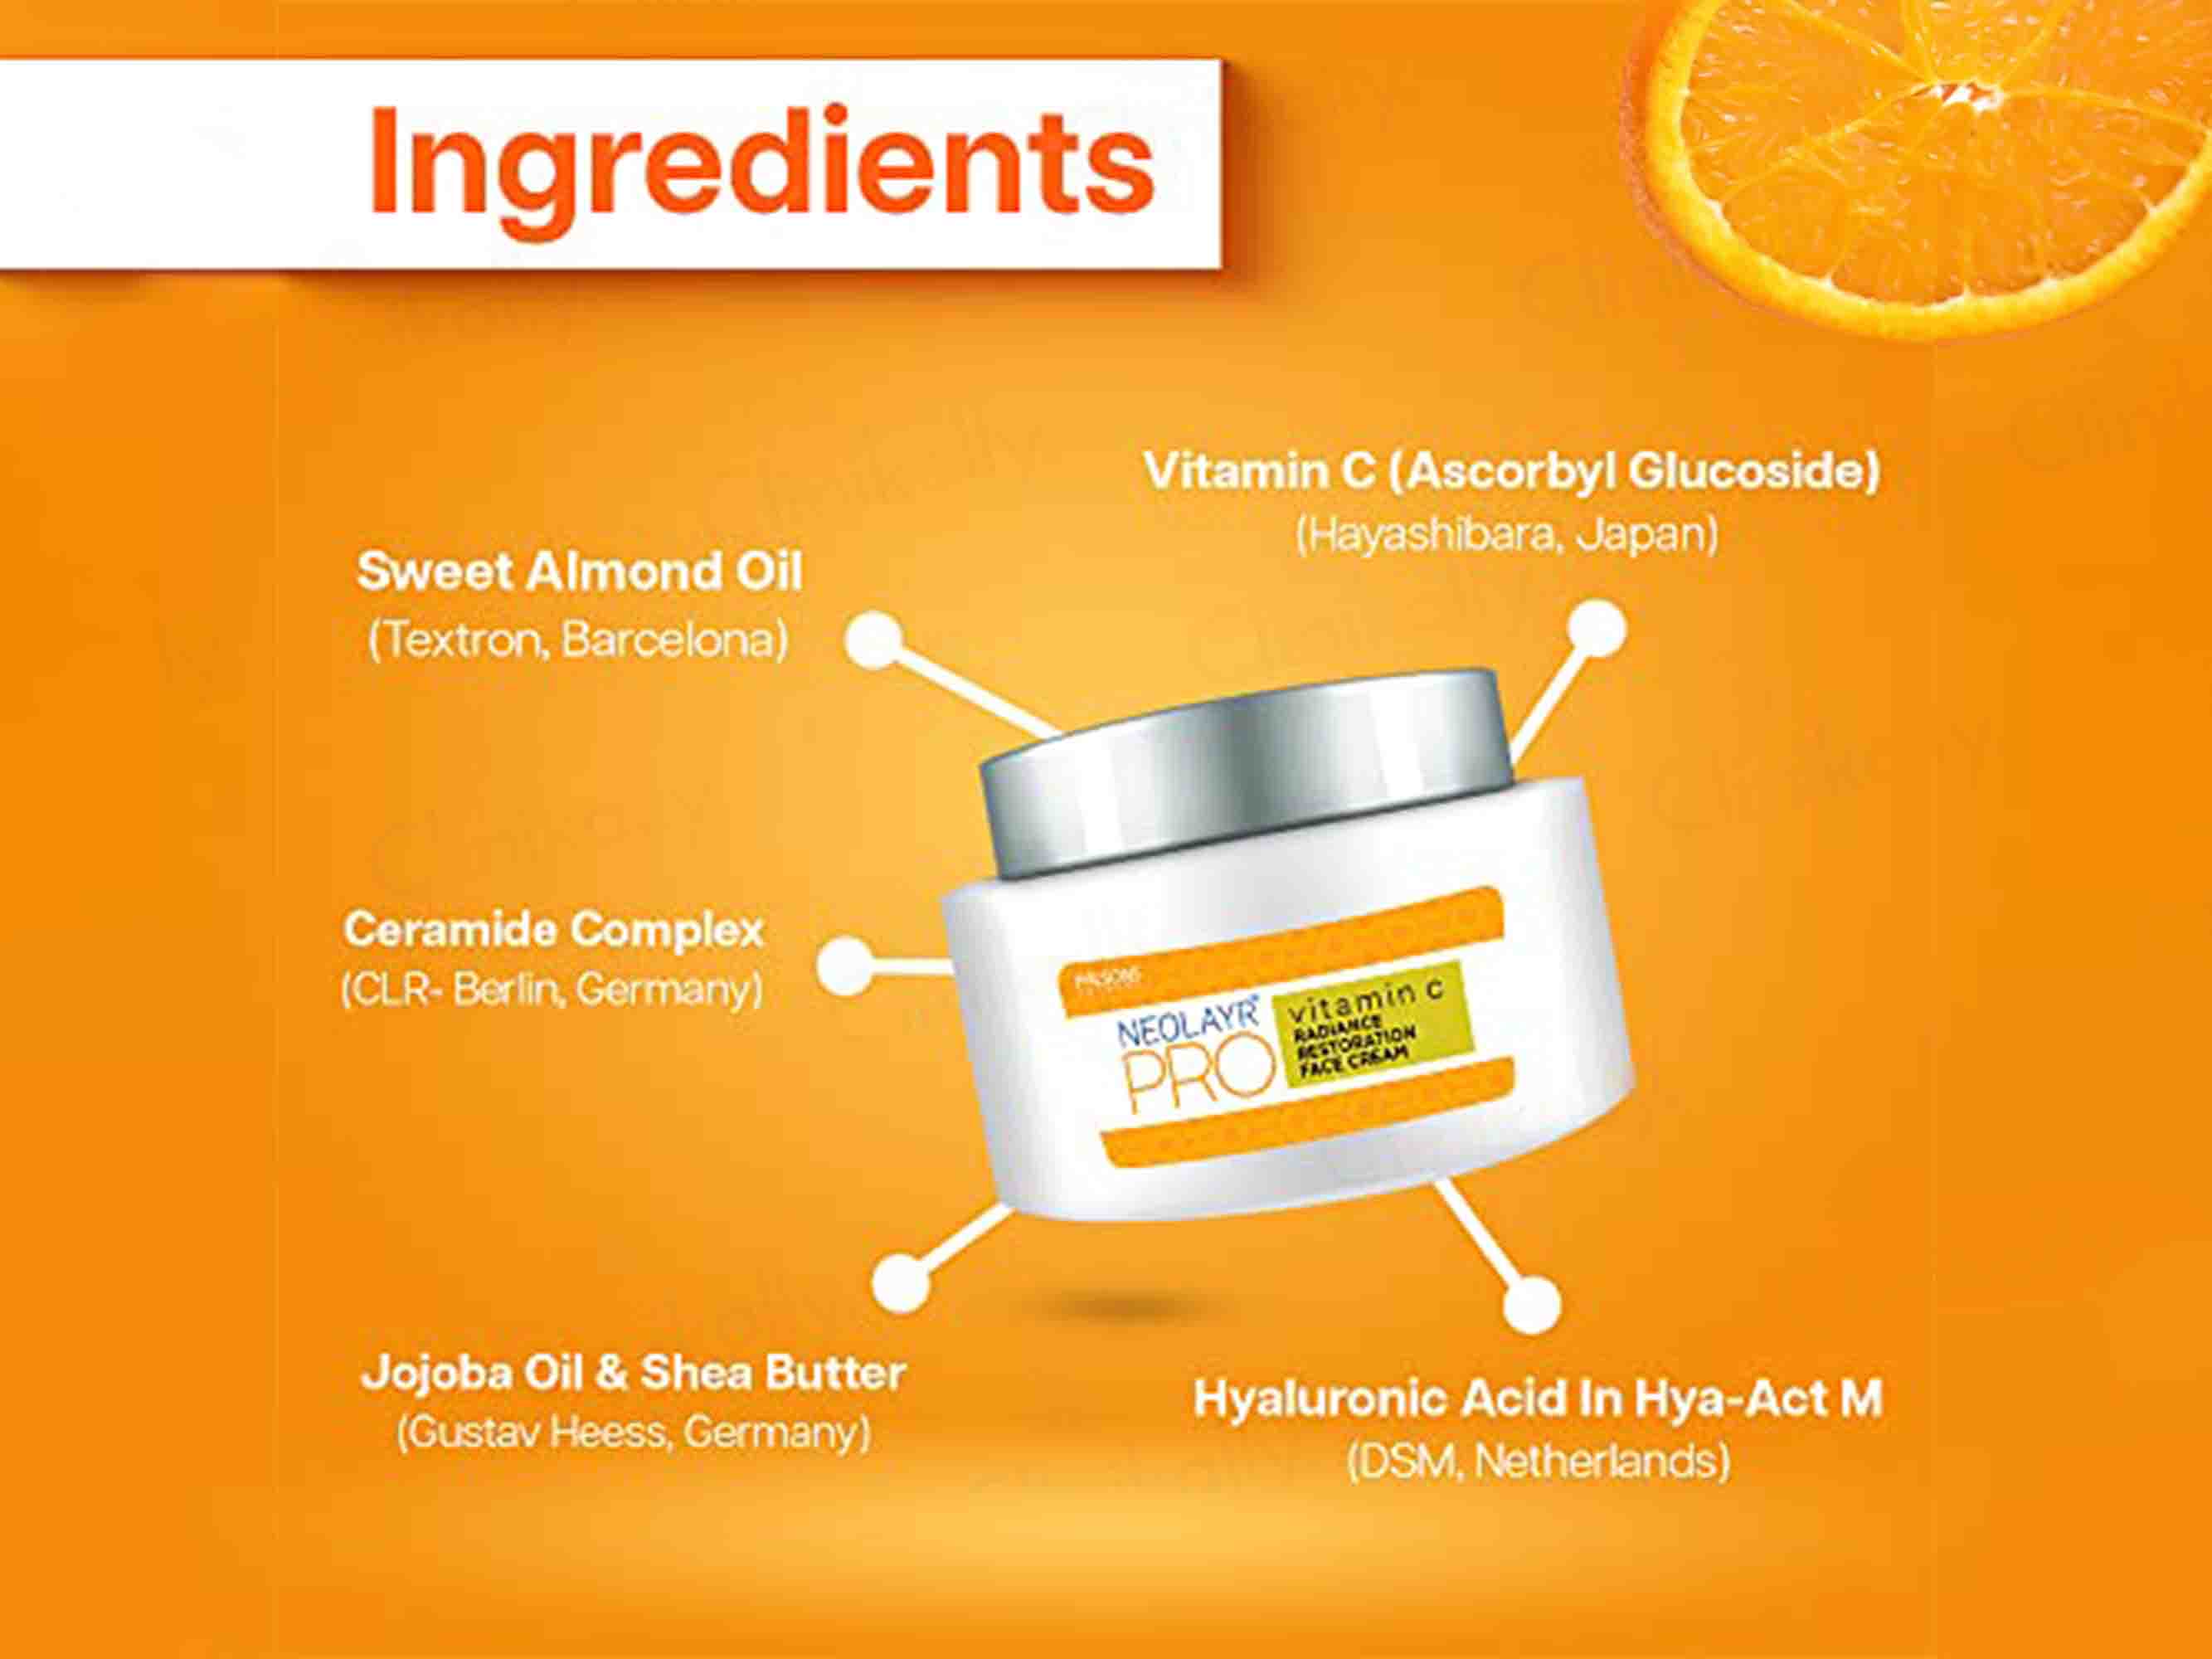 Neolayr Pro Vitamin-C Face Cream - Clinikally